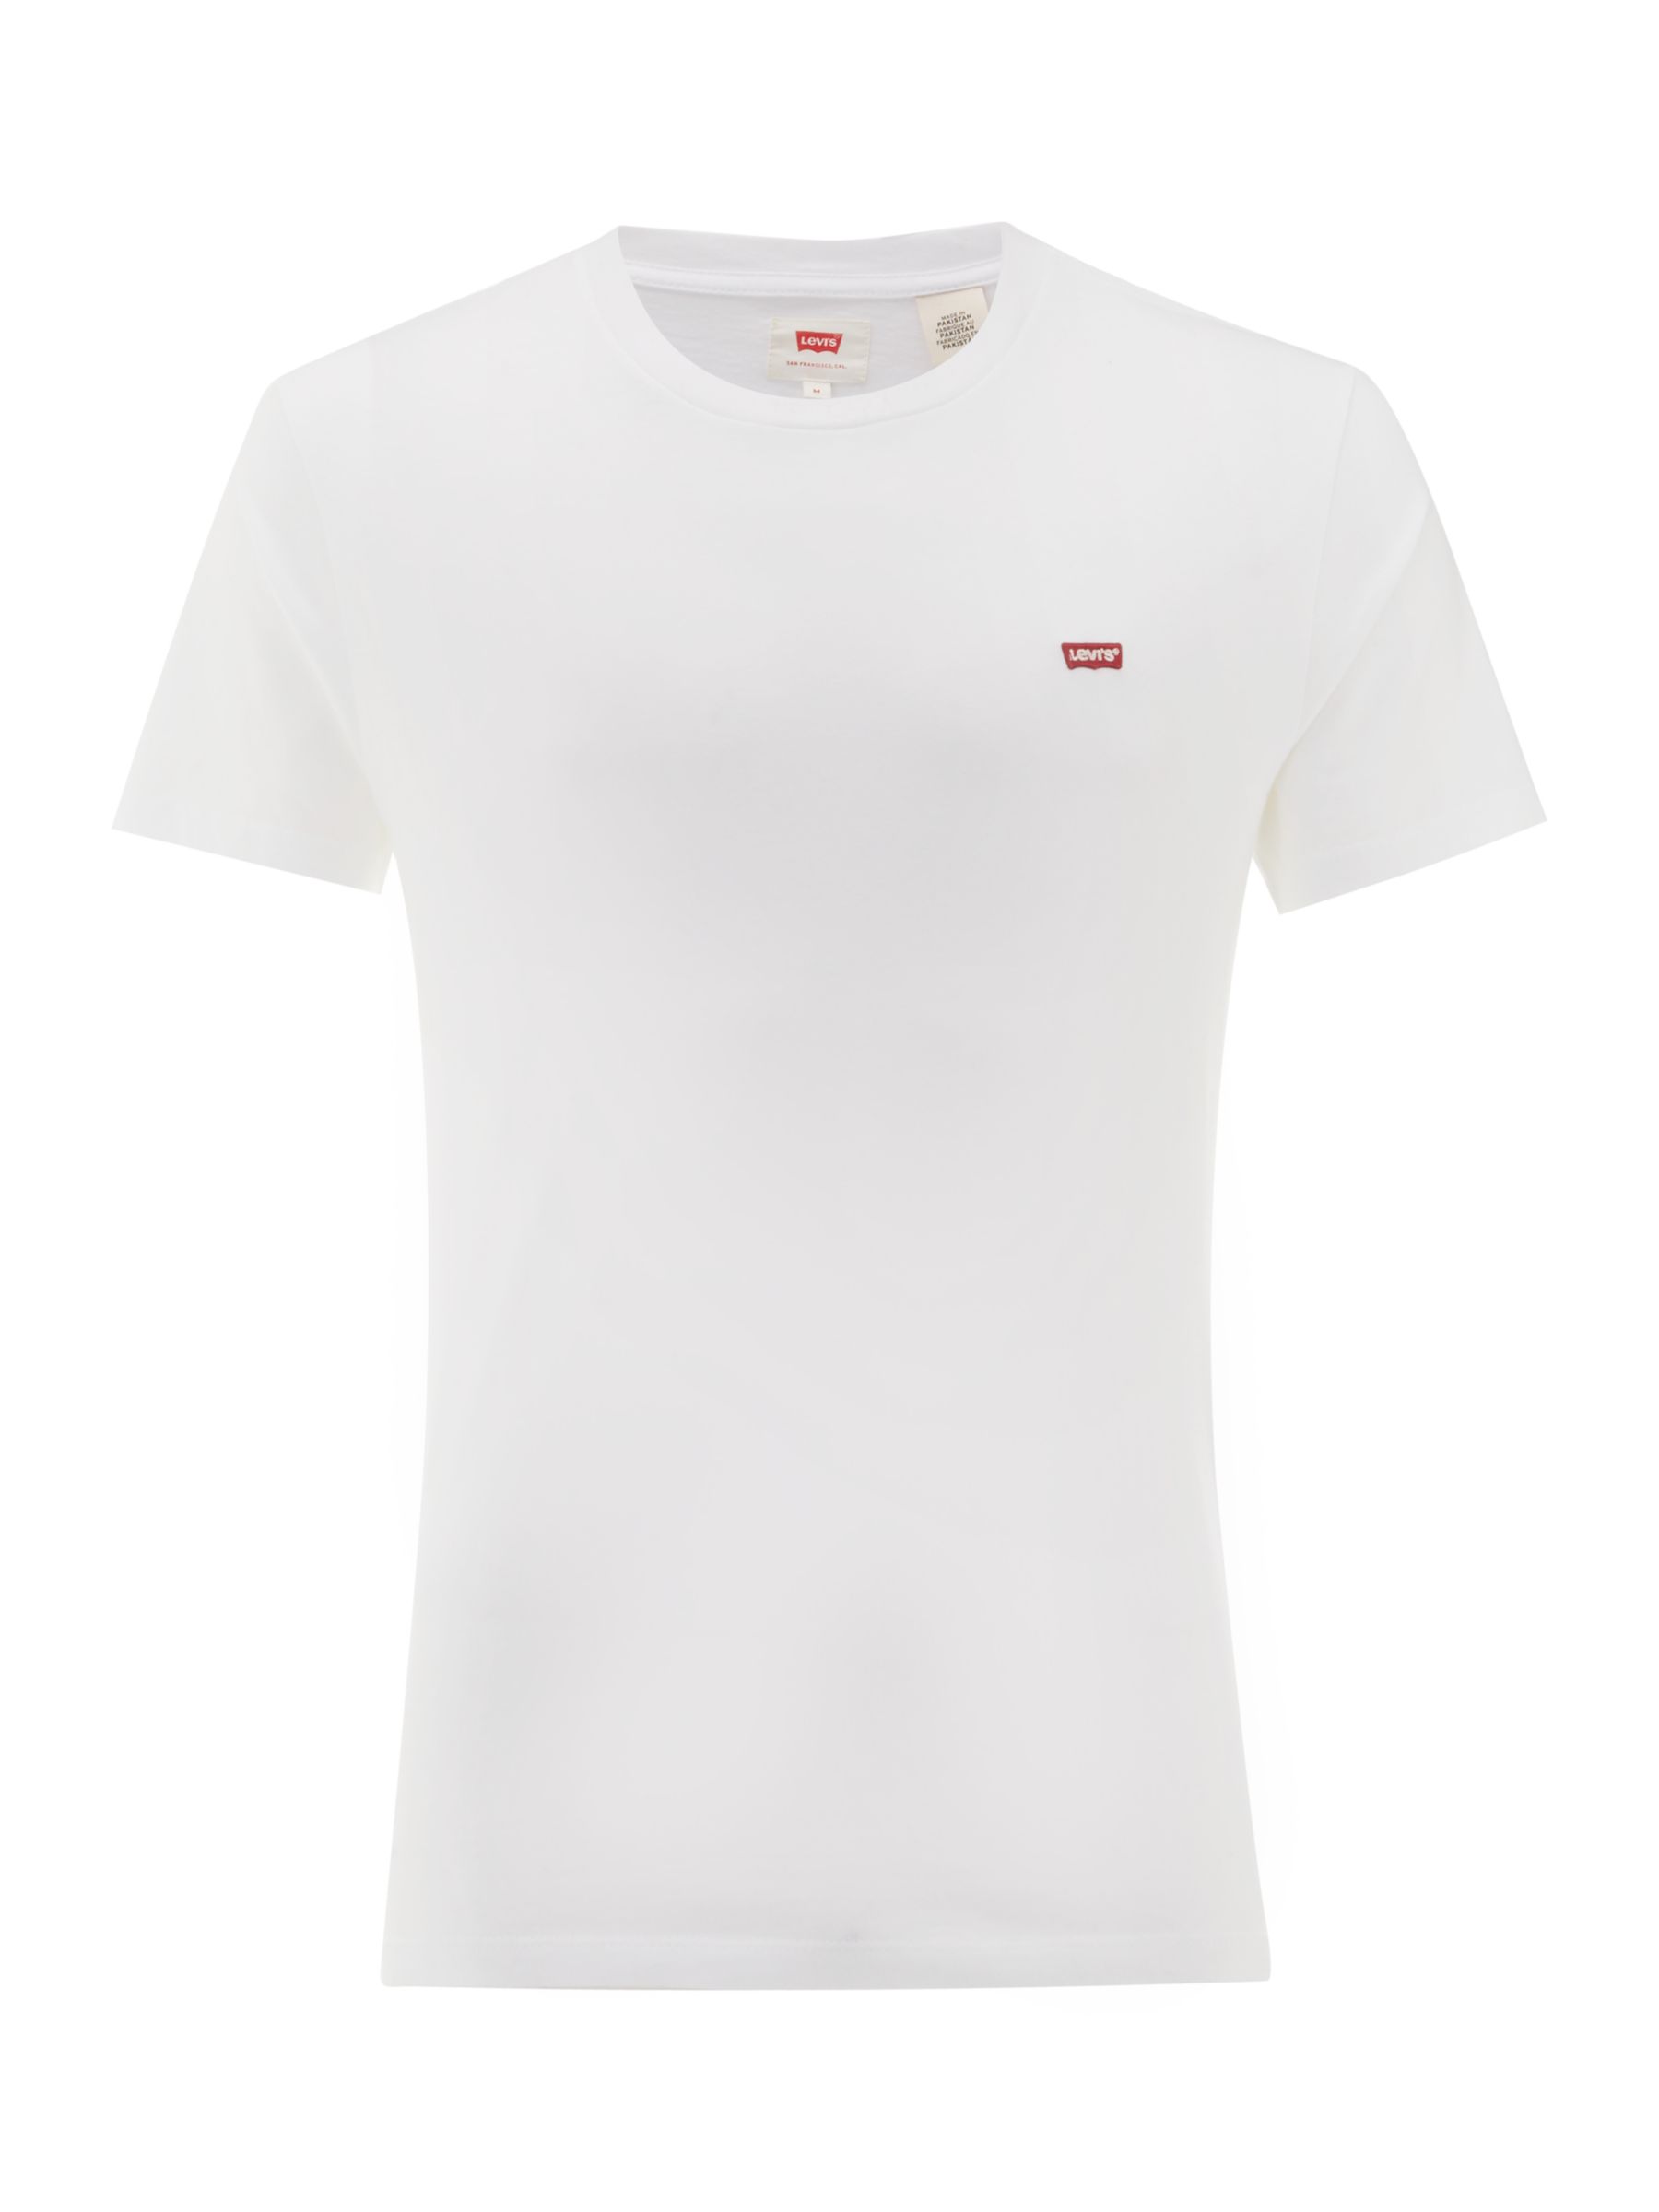 Levi's Original T-Shirt, White, S